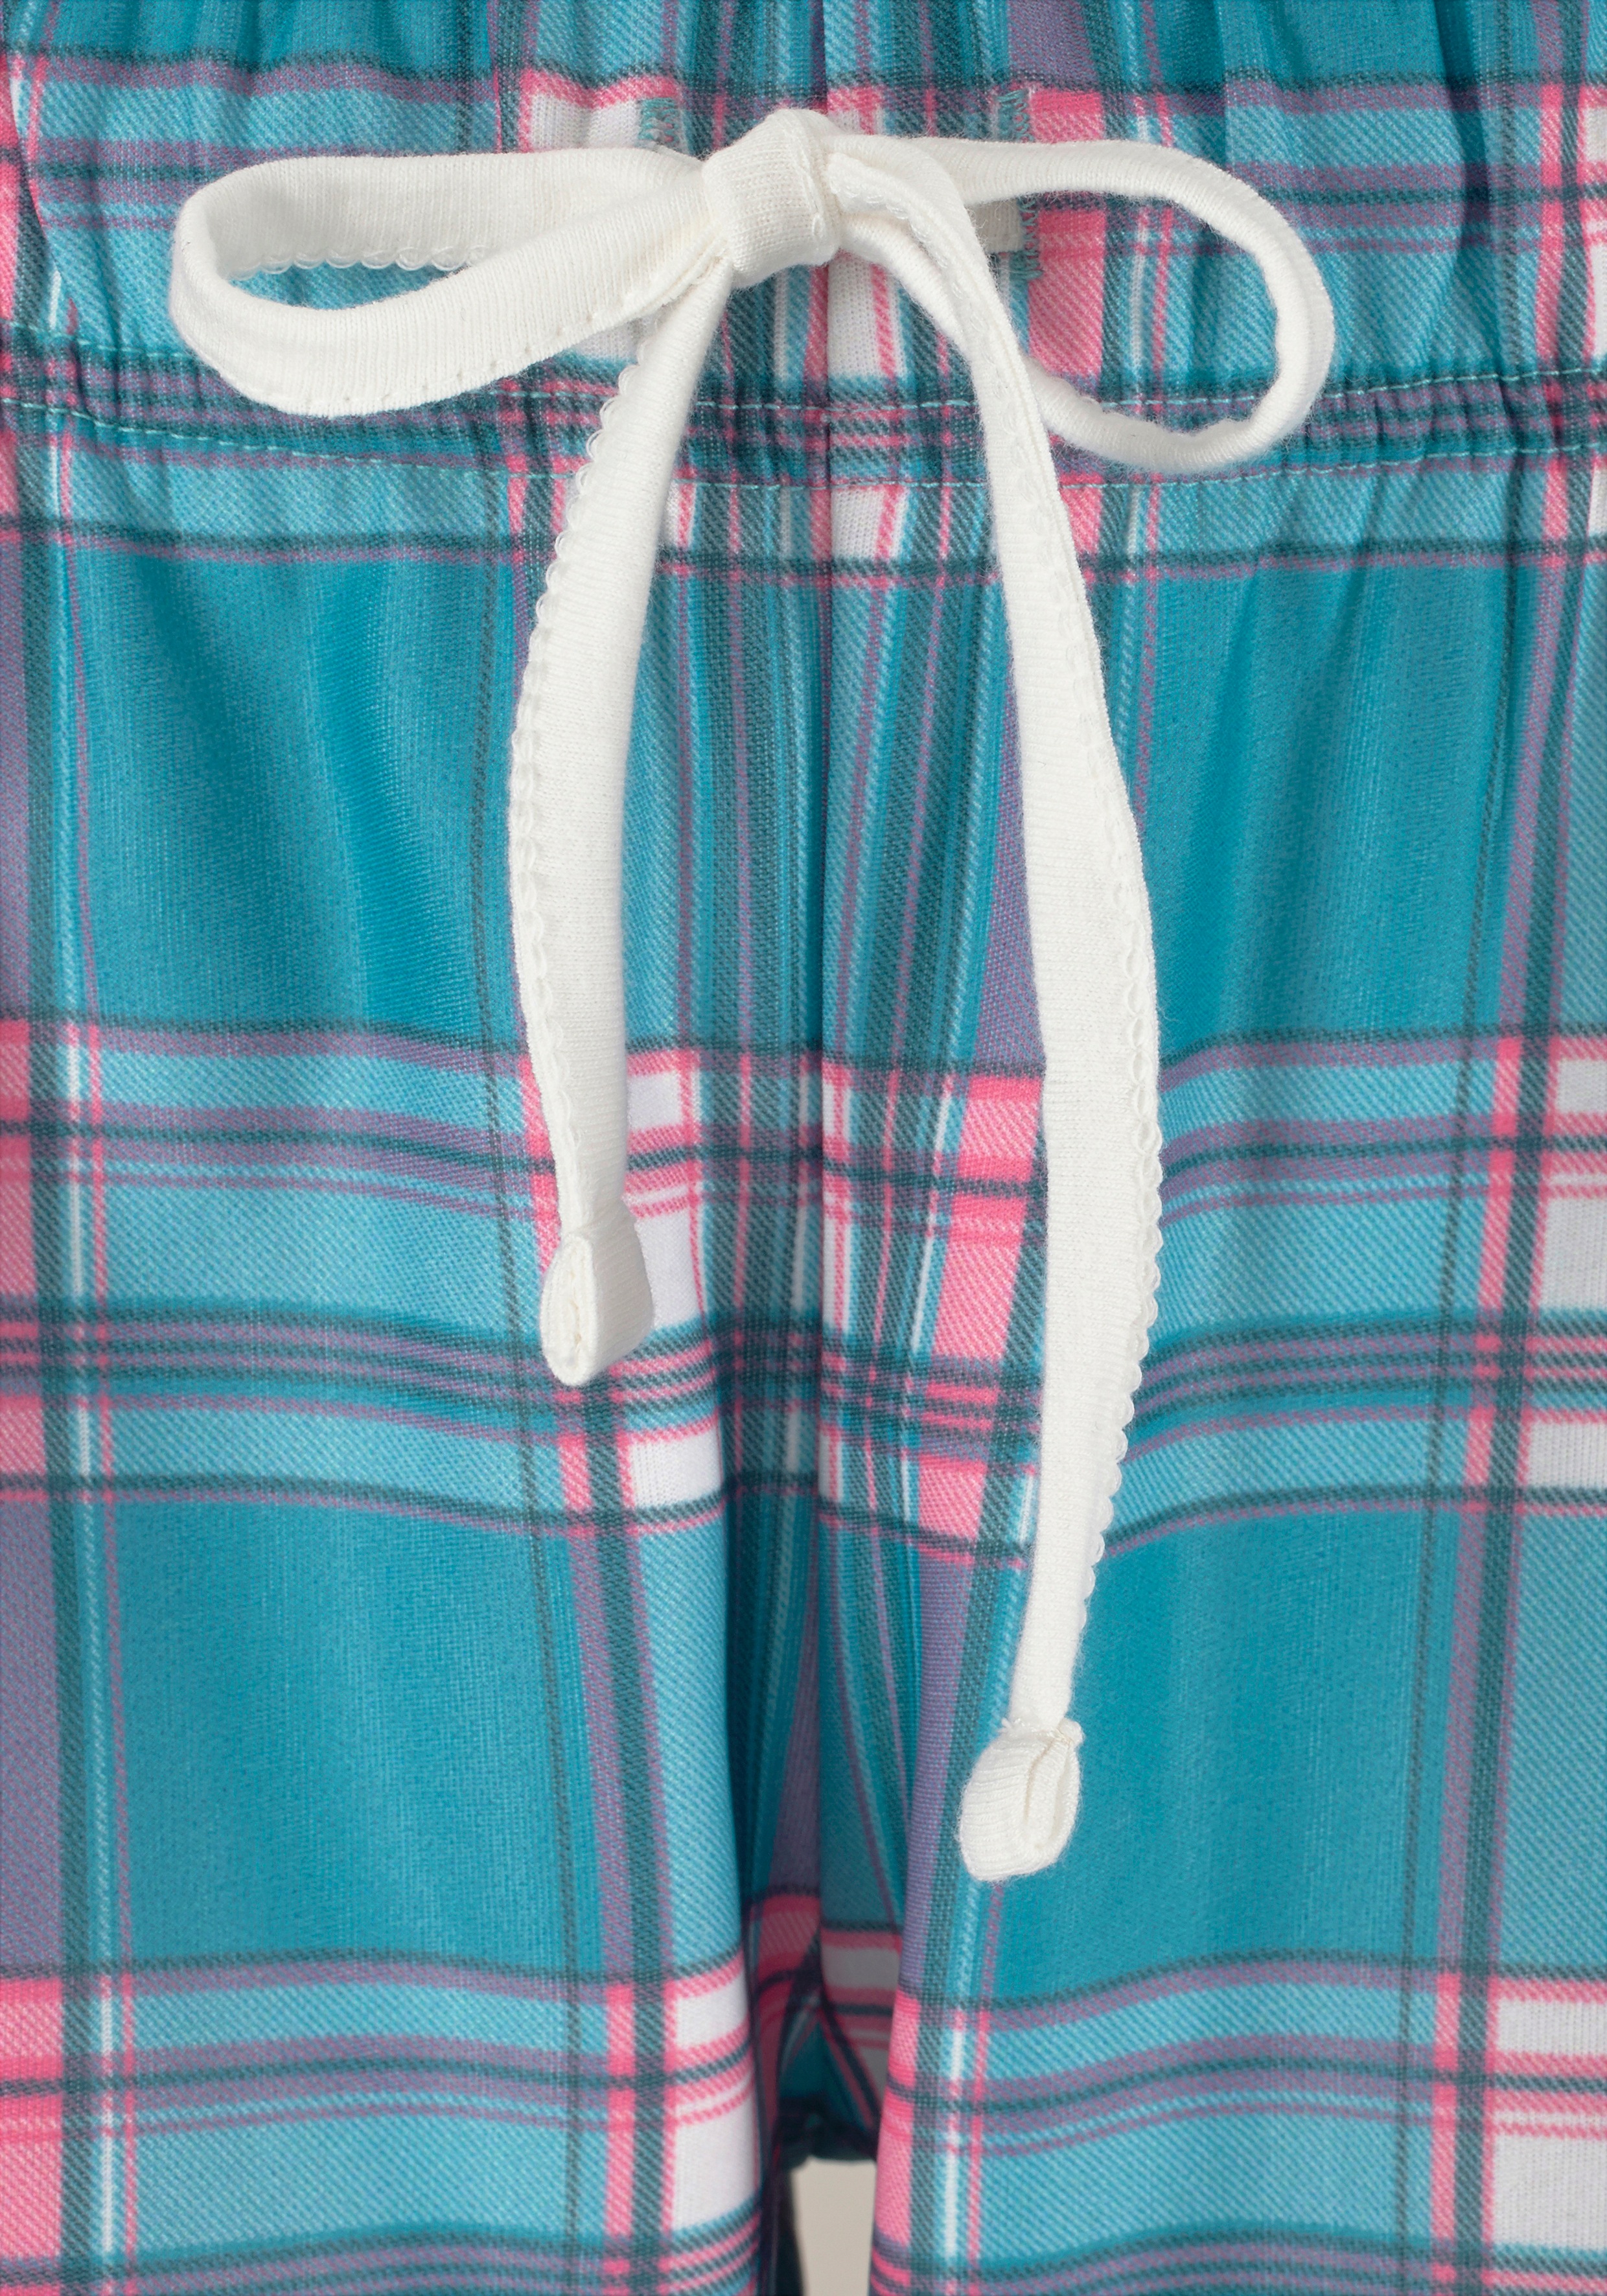 Arizona Pyjama, (2 tlg., 1 Stück), mit karierter Hose » LASCANA | Bademode,  Unterwäsche & Lingerie online kaufen